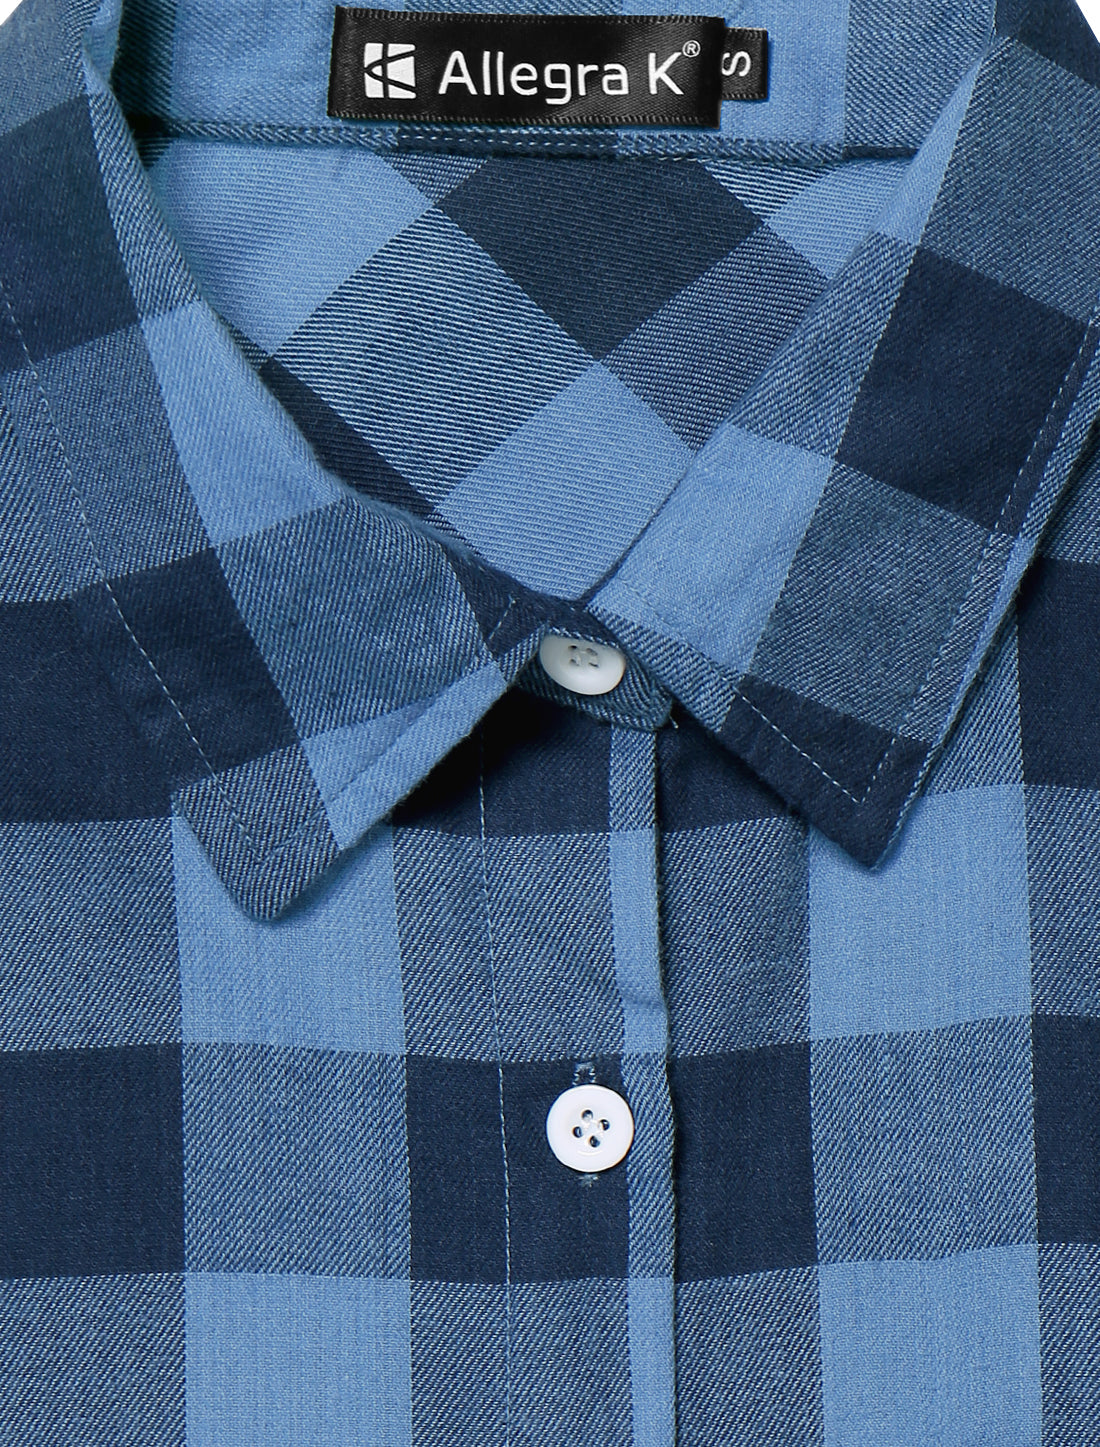 Allegra K Classic Lapel Roll Up Long Sleeve Button Up Plaids Shirt